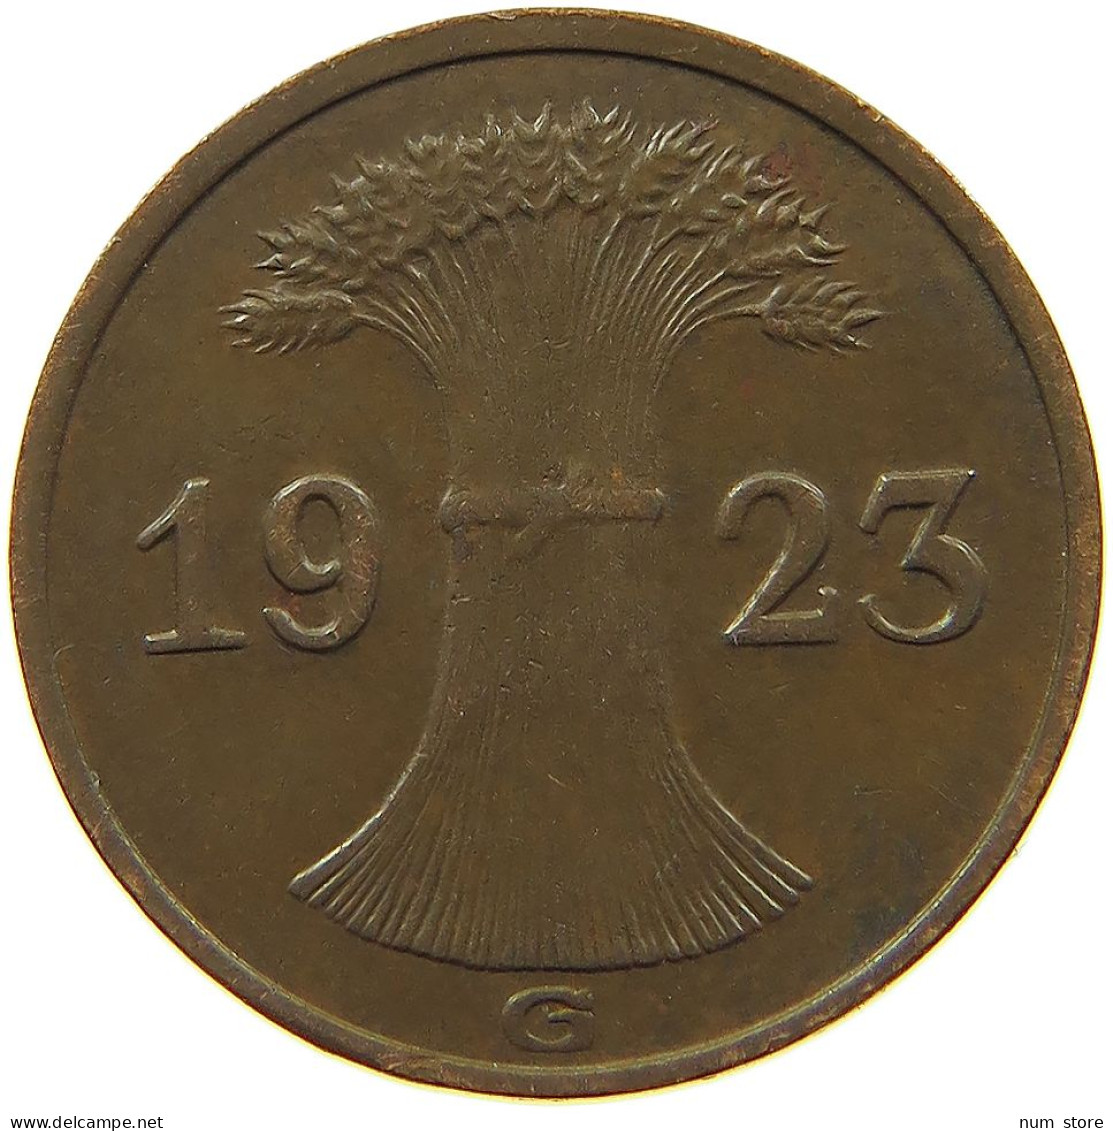 WEIMARER REPUBLIK RENTENPFENNIG 1923 G  #MA 100180 - 1 Renten- & 1 Reichspfennig